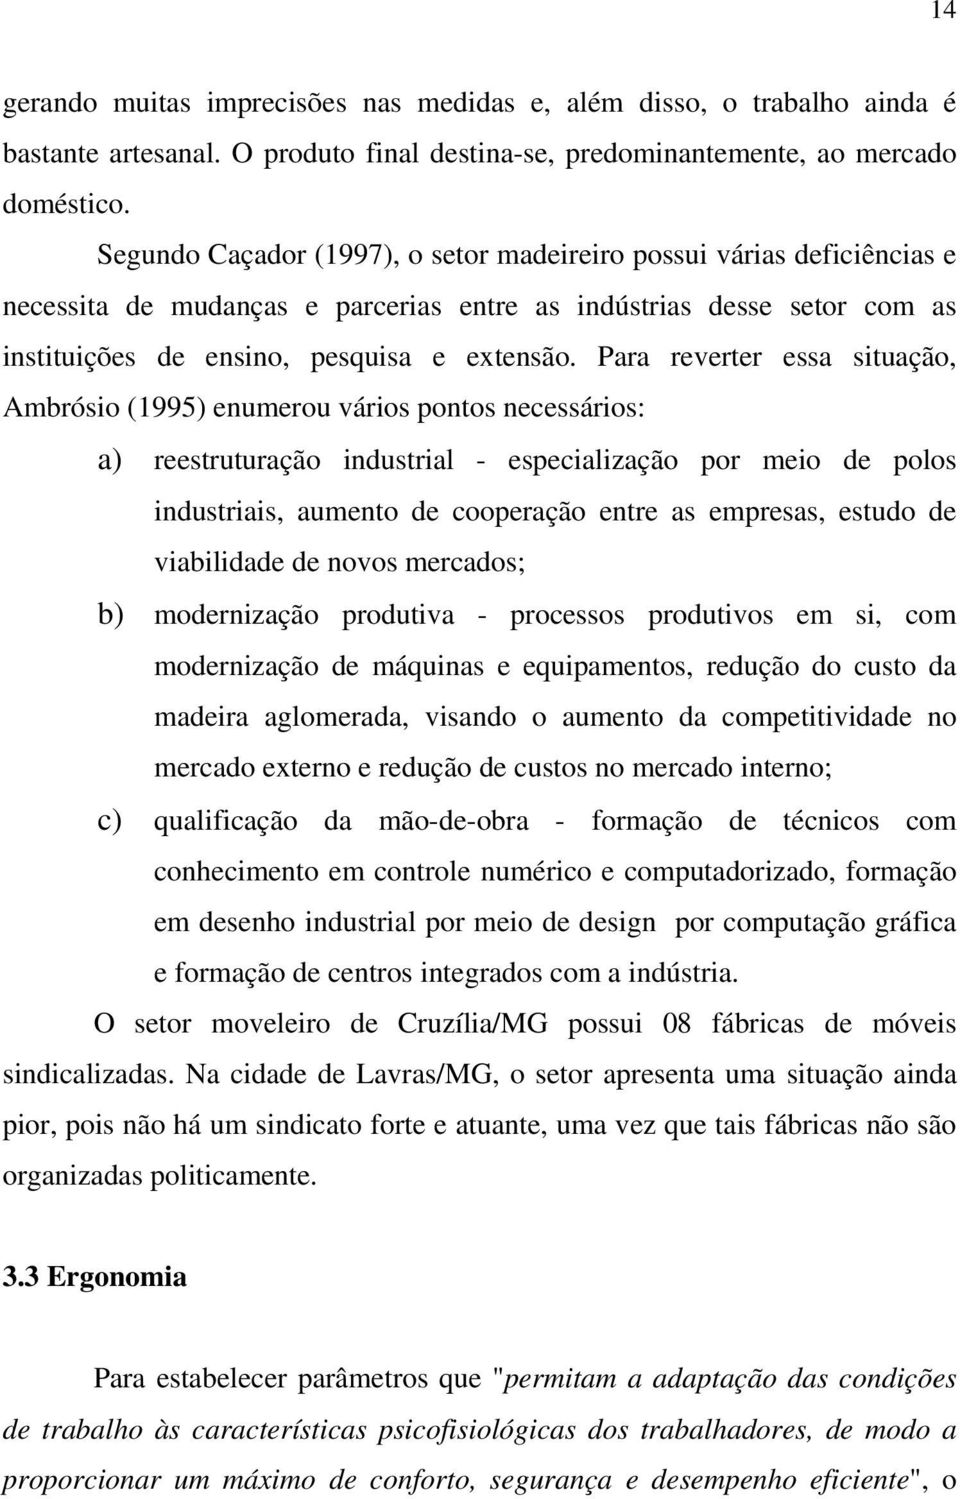 Para reverter essa situação, Ambrósio (1995) enumerou vários pontos necessários: a) reestruturação industrial - especialização por meio de polos industriais, aumento de cooperação entre as empresas,